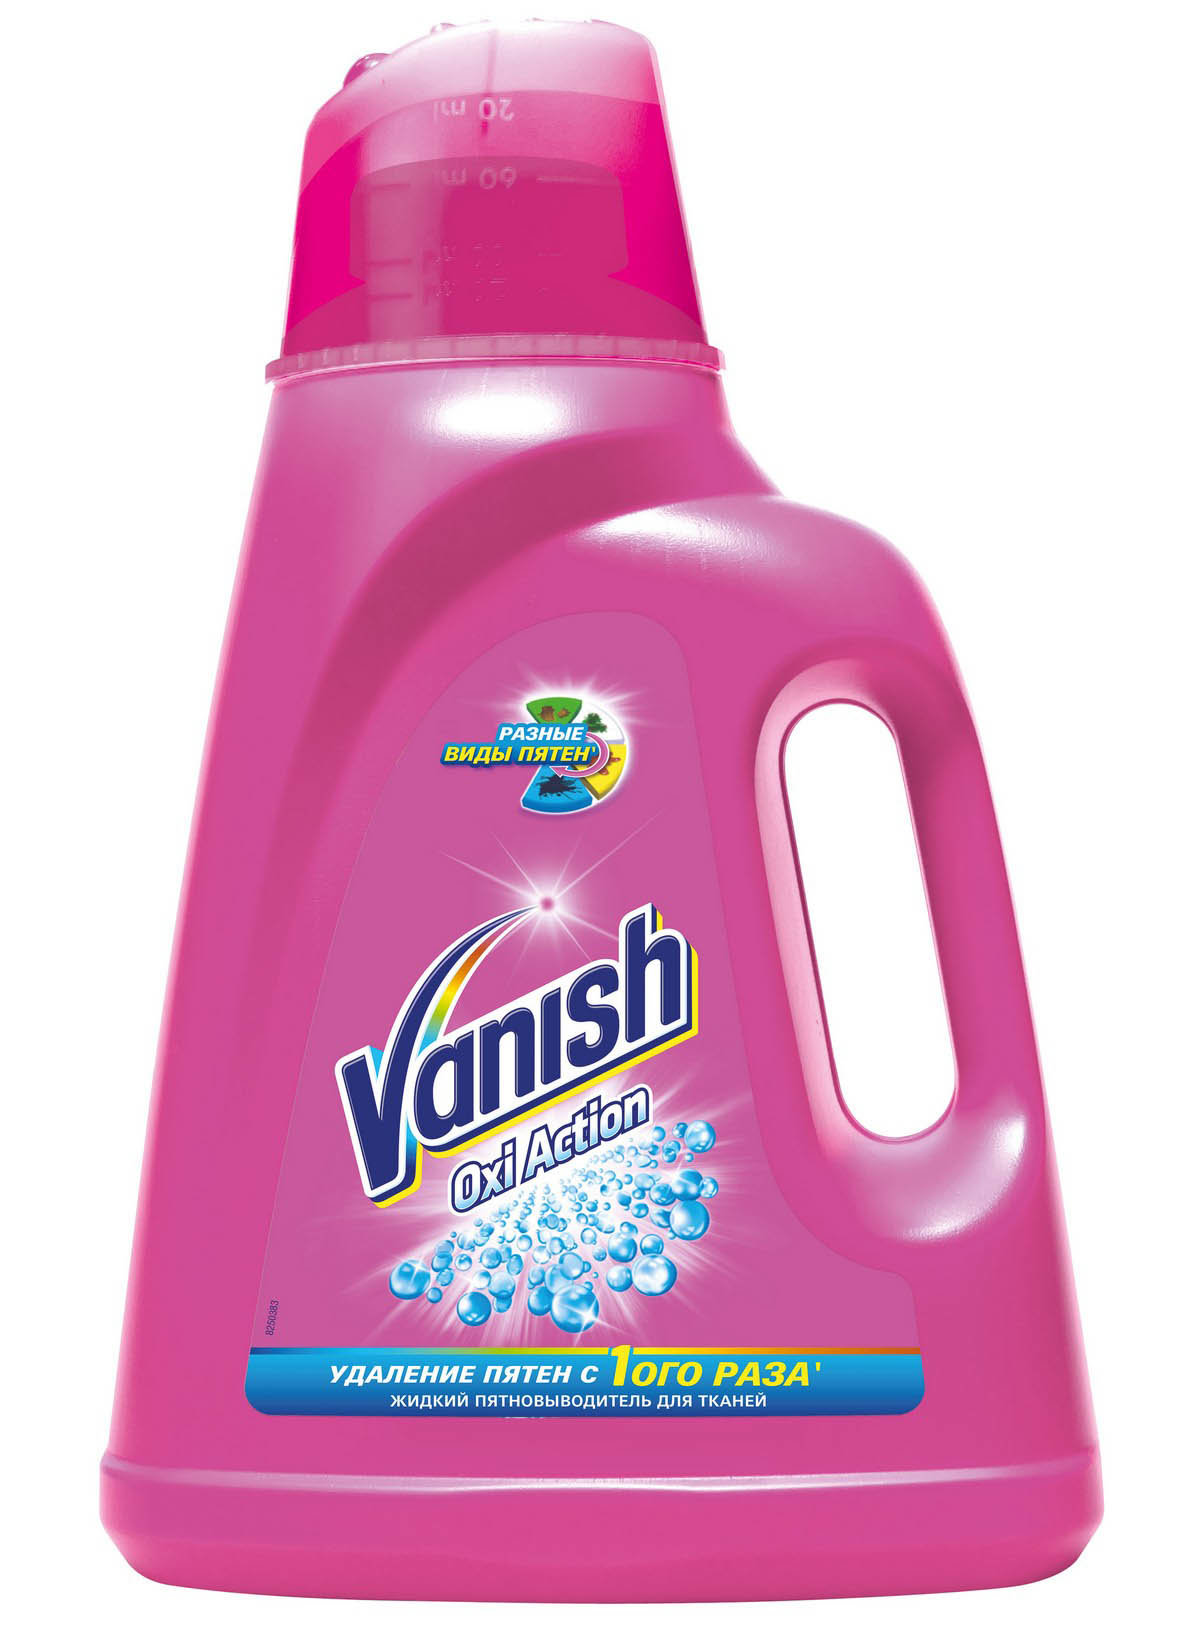 Ваниш (Vanish) OXI Action Пятновыводитель специальный для тканей 2л 692р